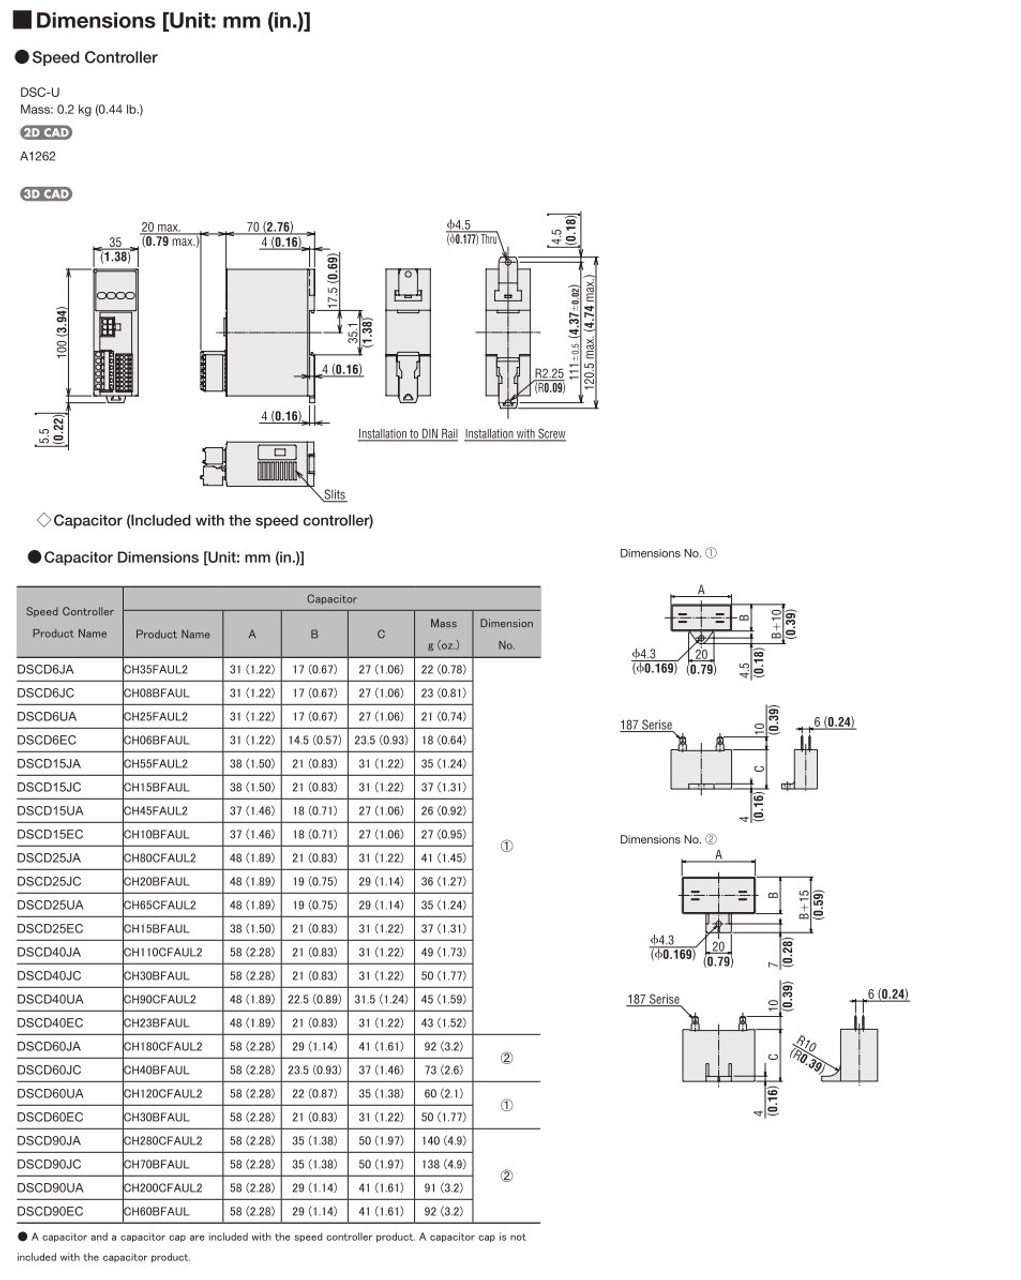 SCM315EC-300A / DSCD15EC - Dimensions